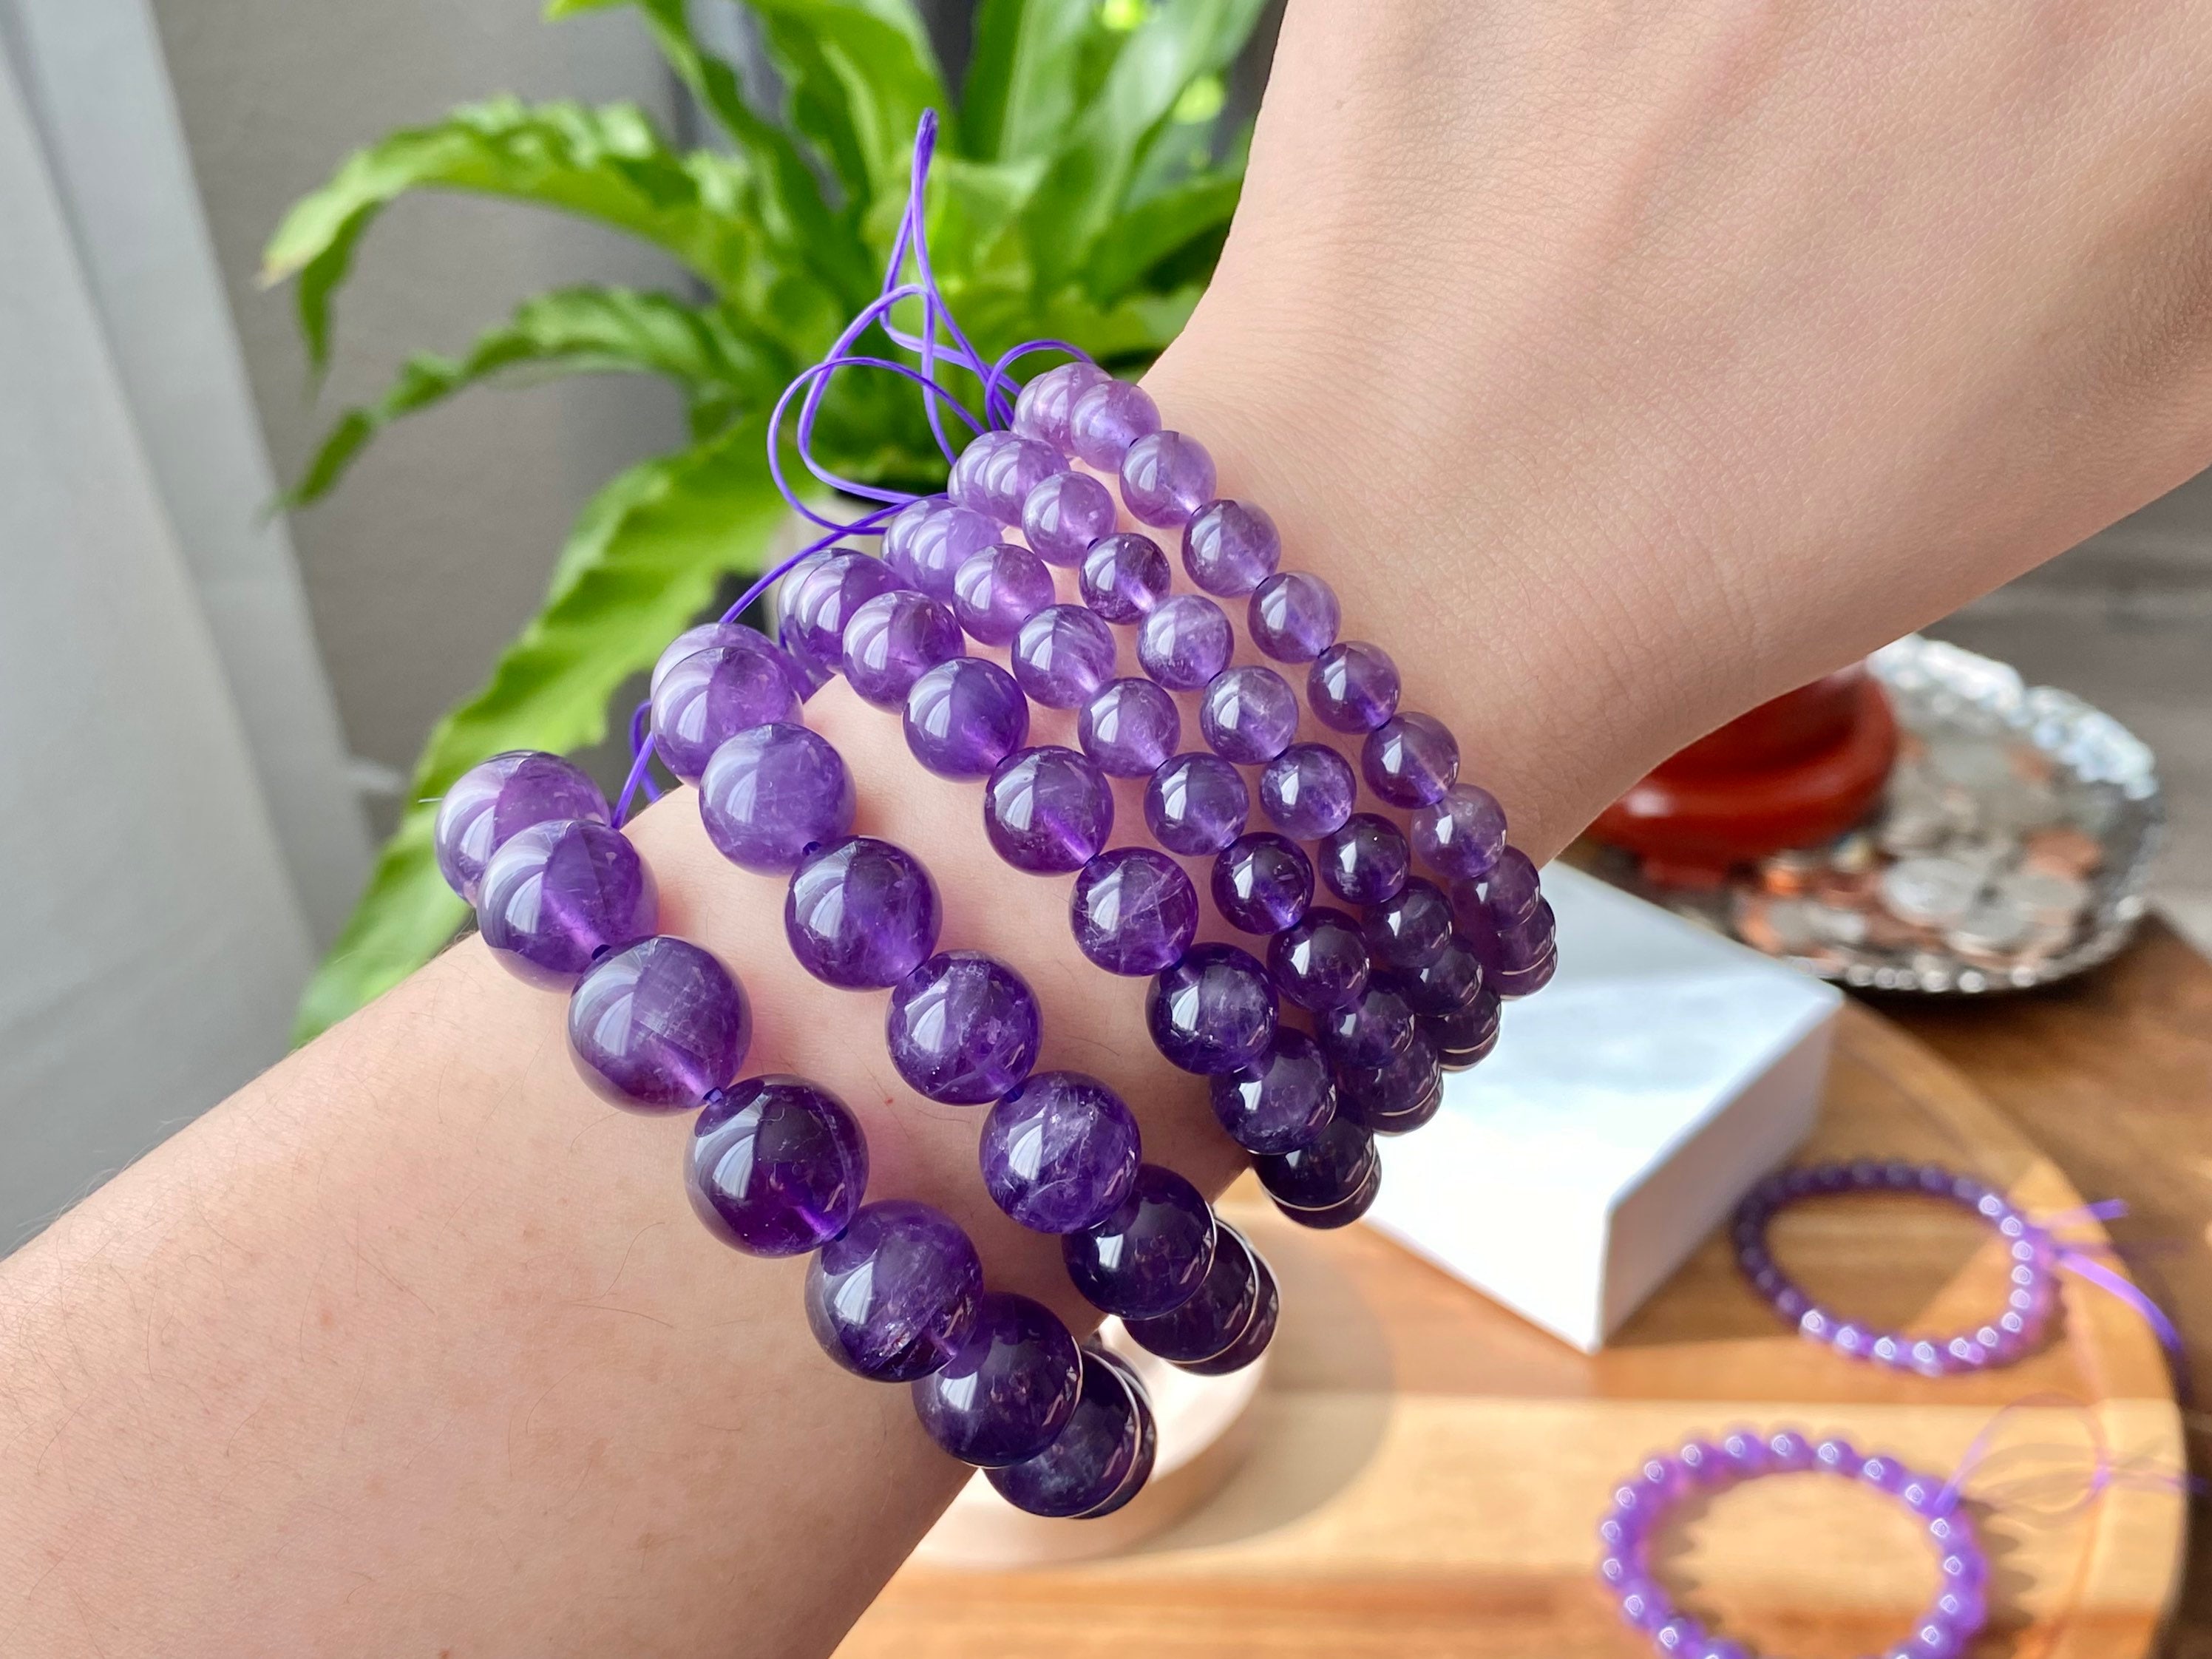 11mm Genuine Natural Purple Amethyst Crystal Beads Bracelet